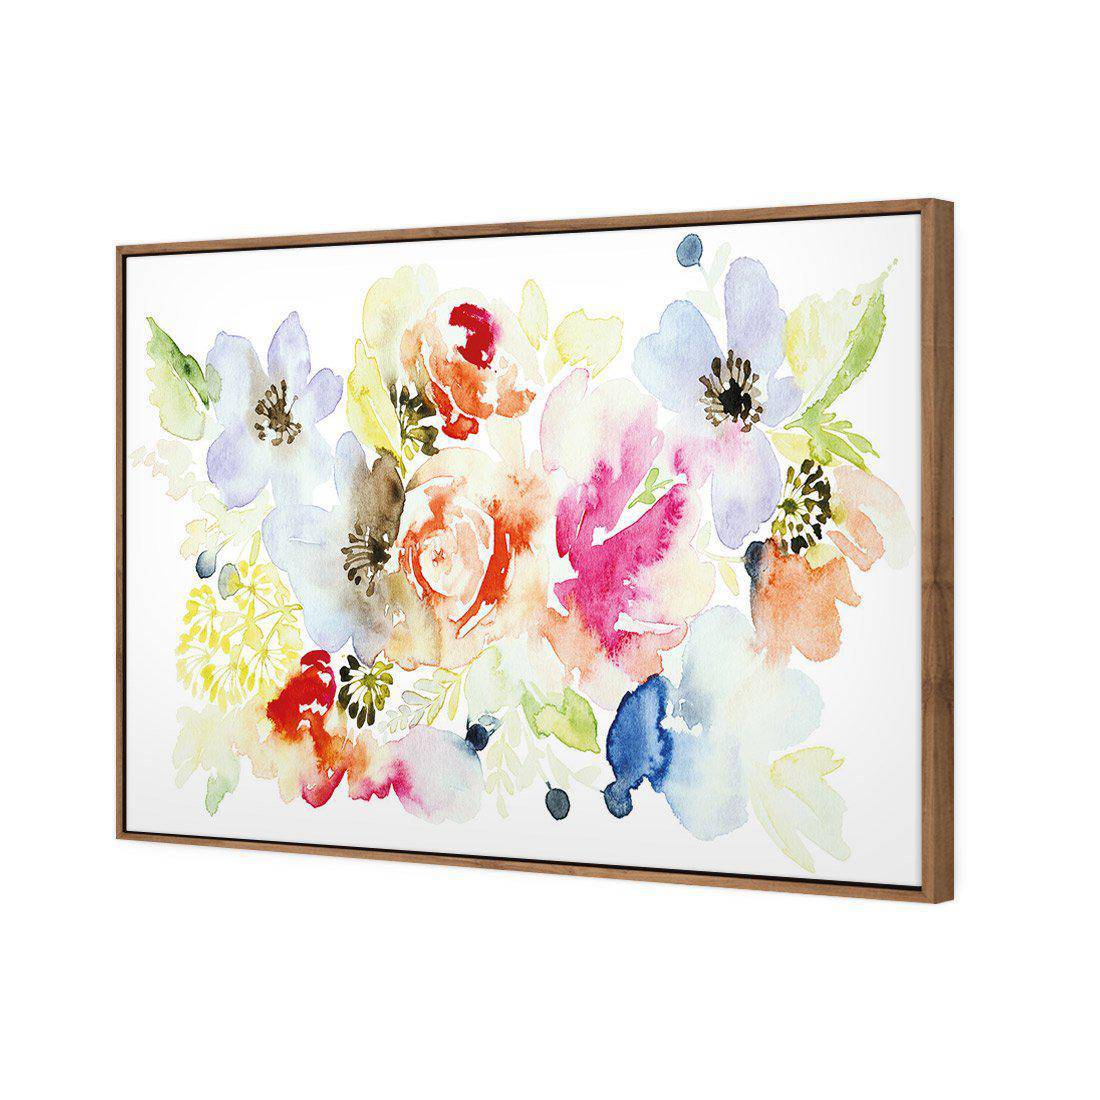 Floral Array Canvas Art-Canvas-Wall Art Designs-45x30cm-Canvas - Natural Frame-Wall Art Designs